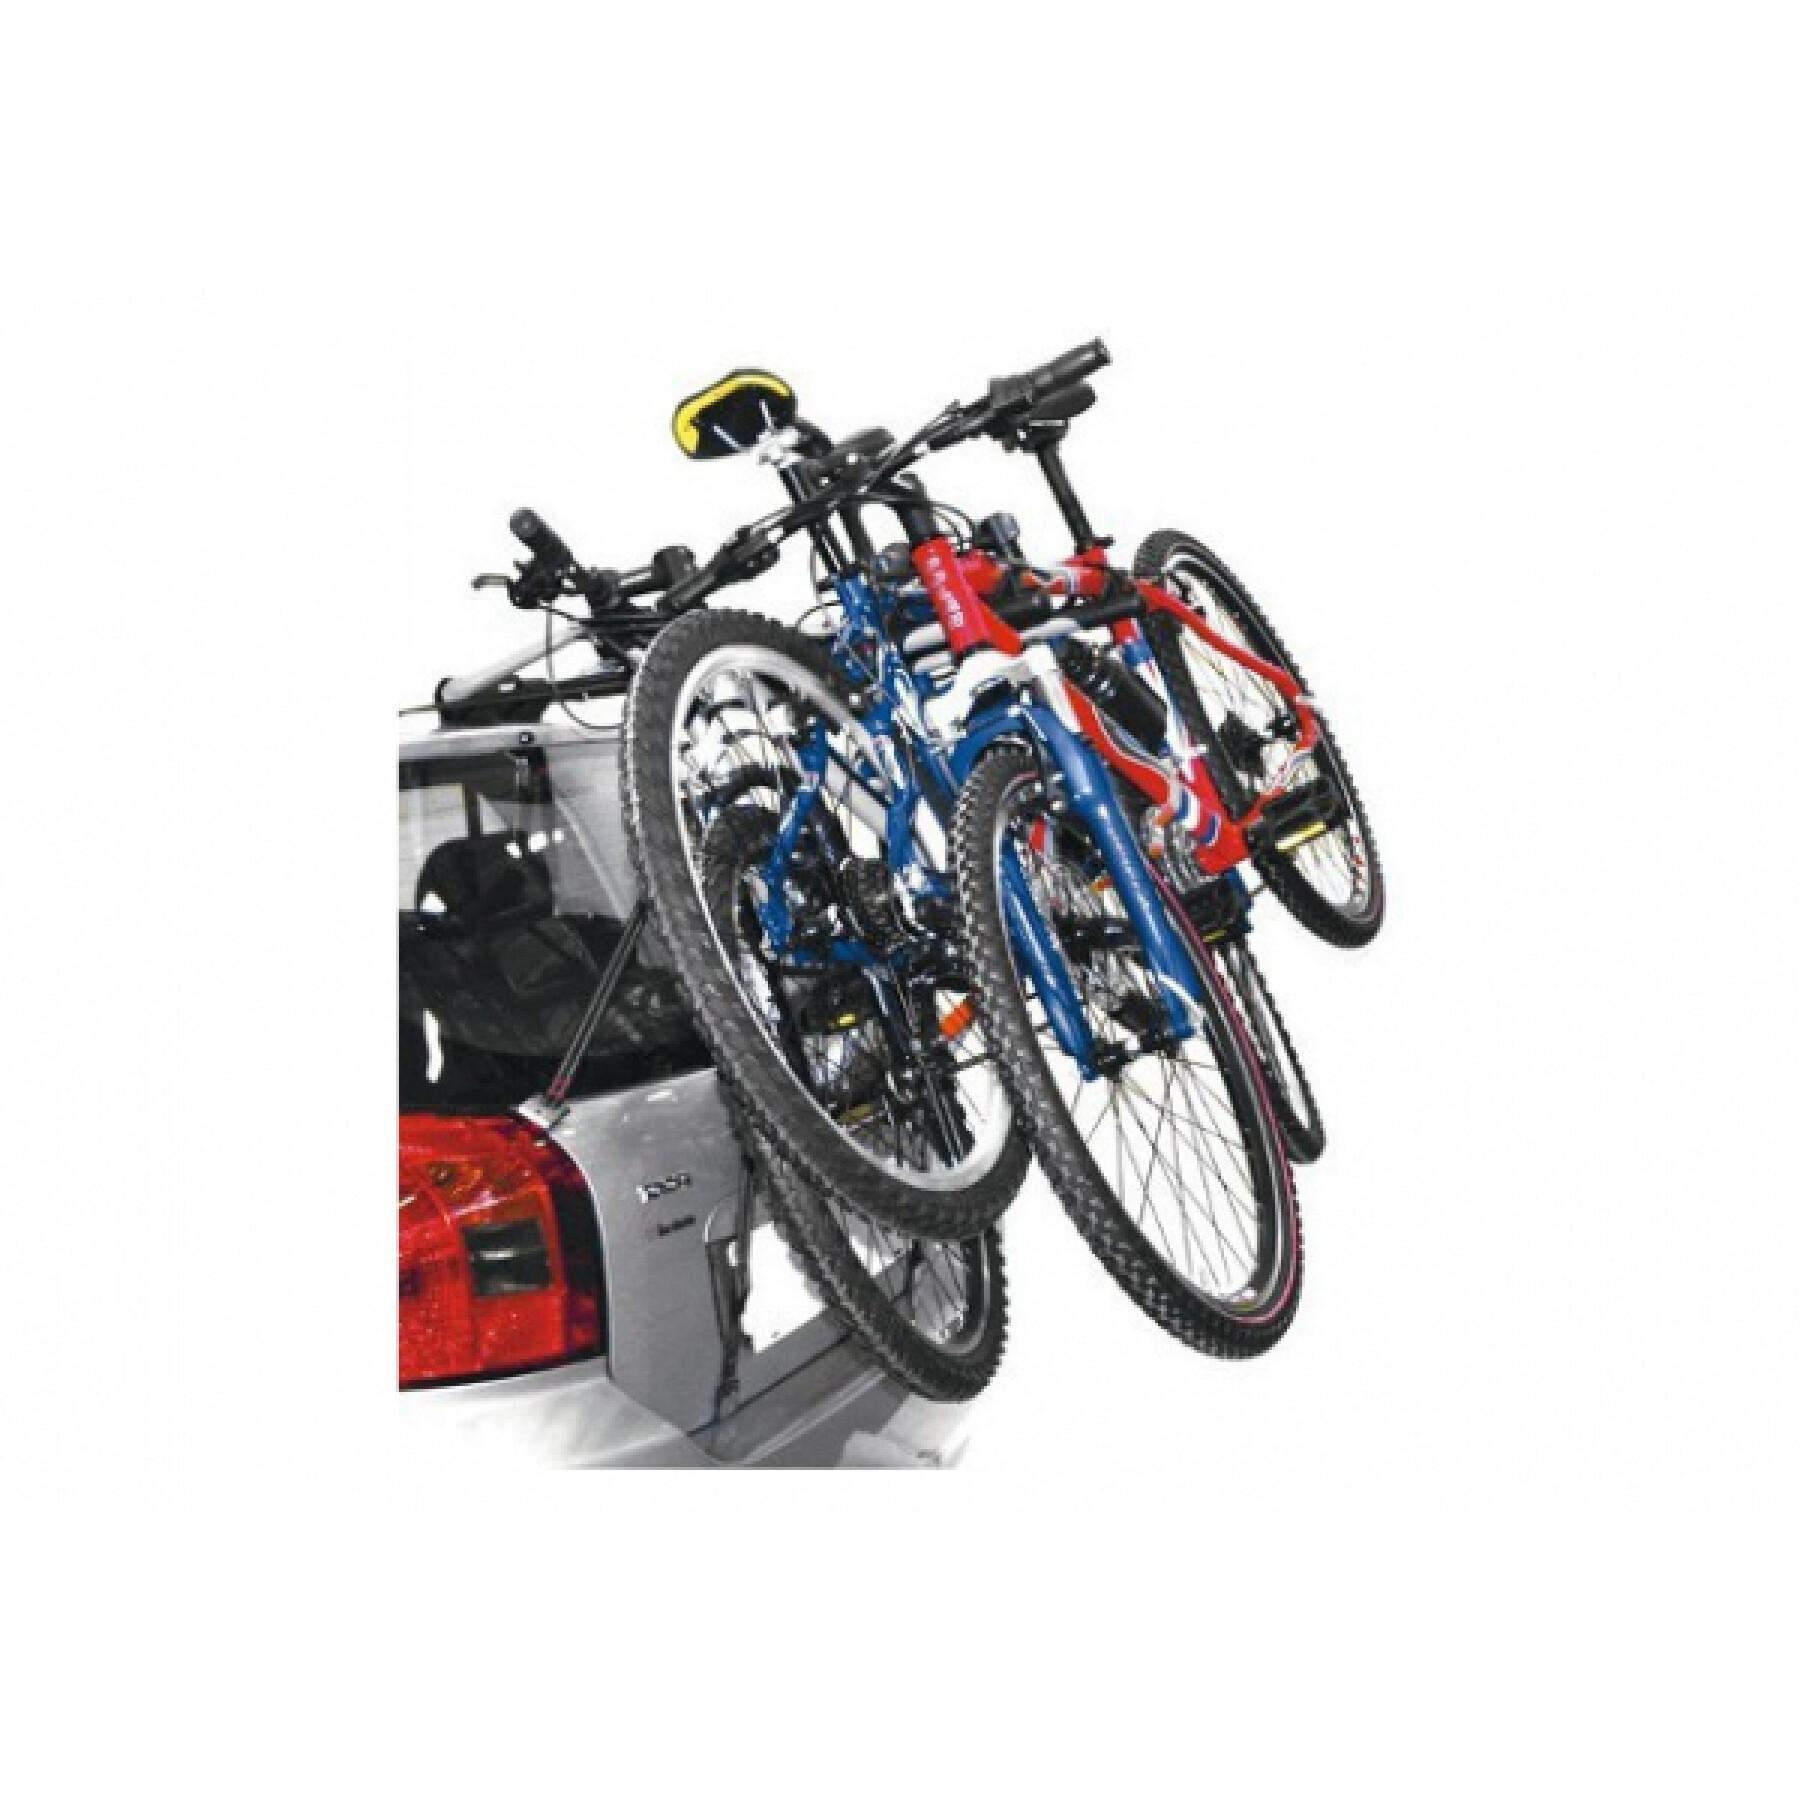 Kofferraum-Fahrradträger für 3 Fahrräder mit Stellplatz in Folie verpackt Peruzzo Verona 45 kgs